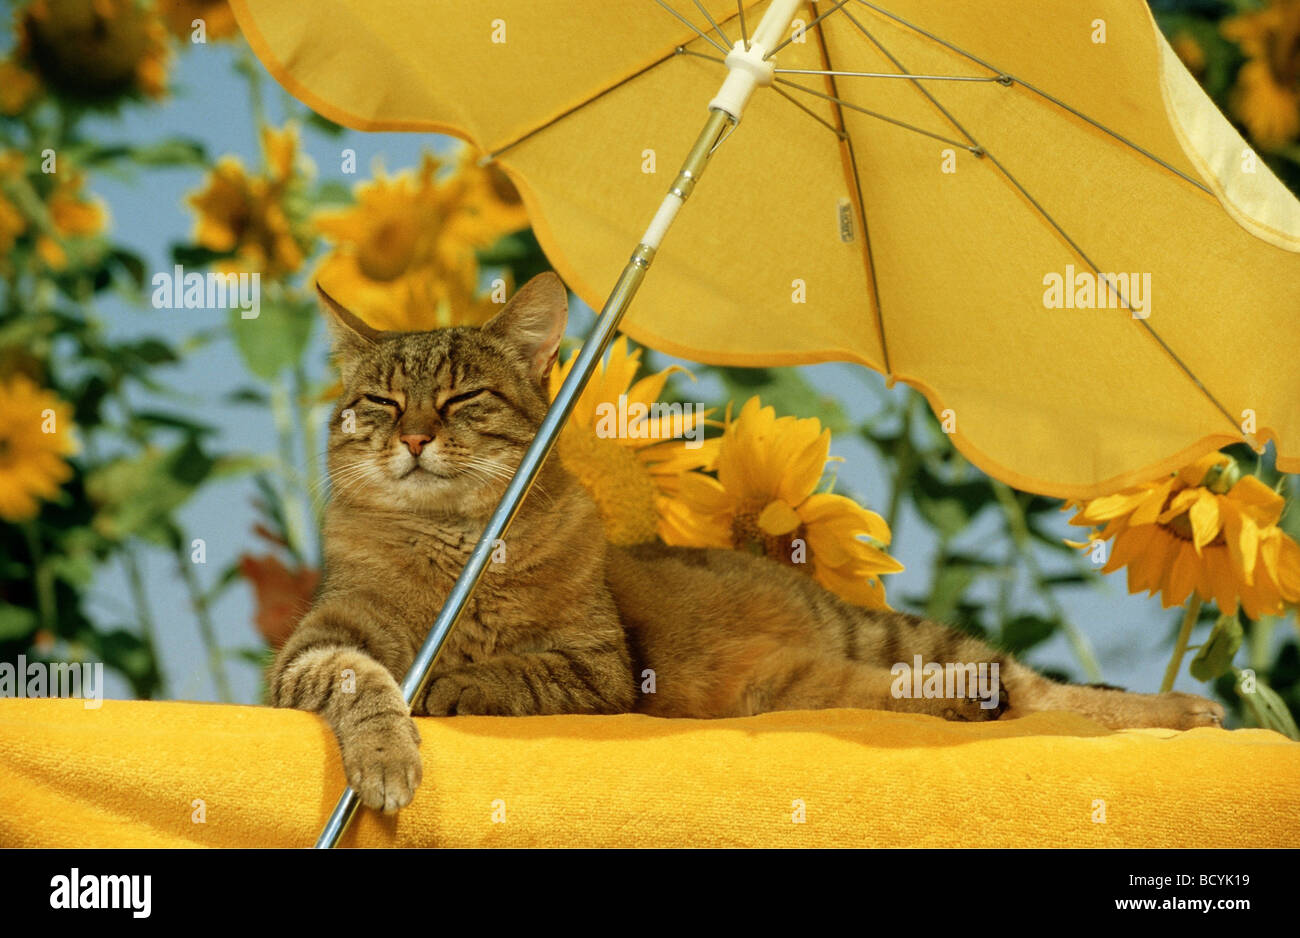 Lustige Tiere: Katze unter Sonnenschirm Sonnenschirm liegen Stockfotografie  - Alamy